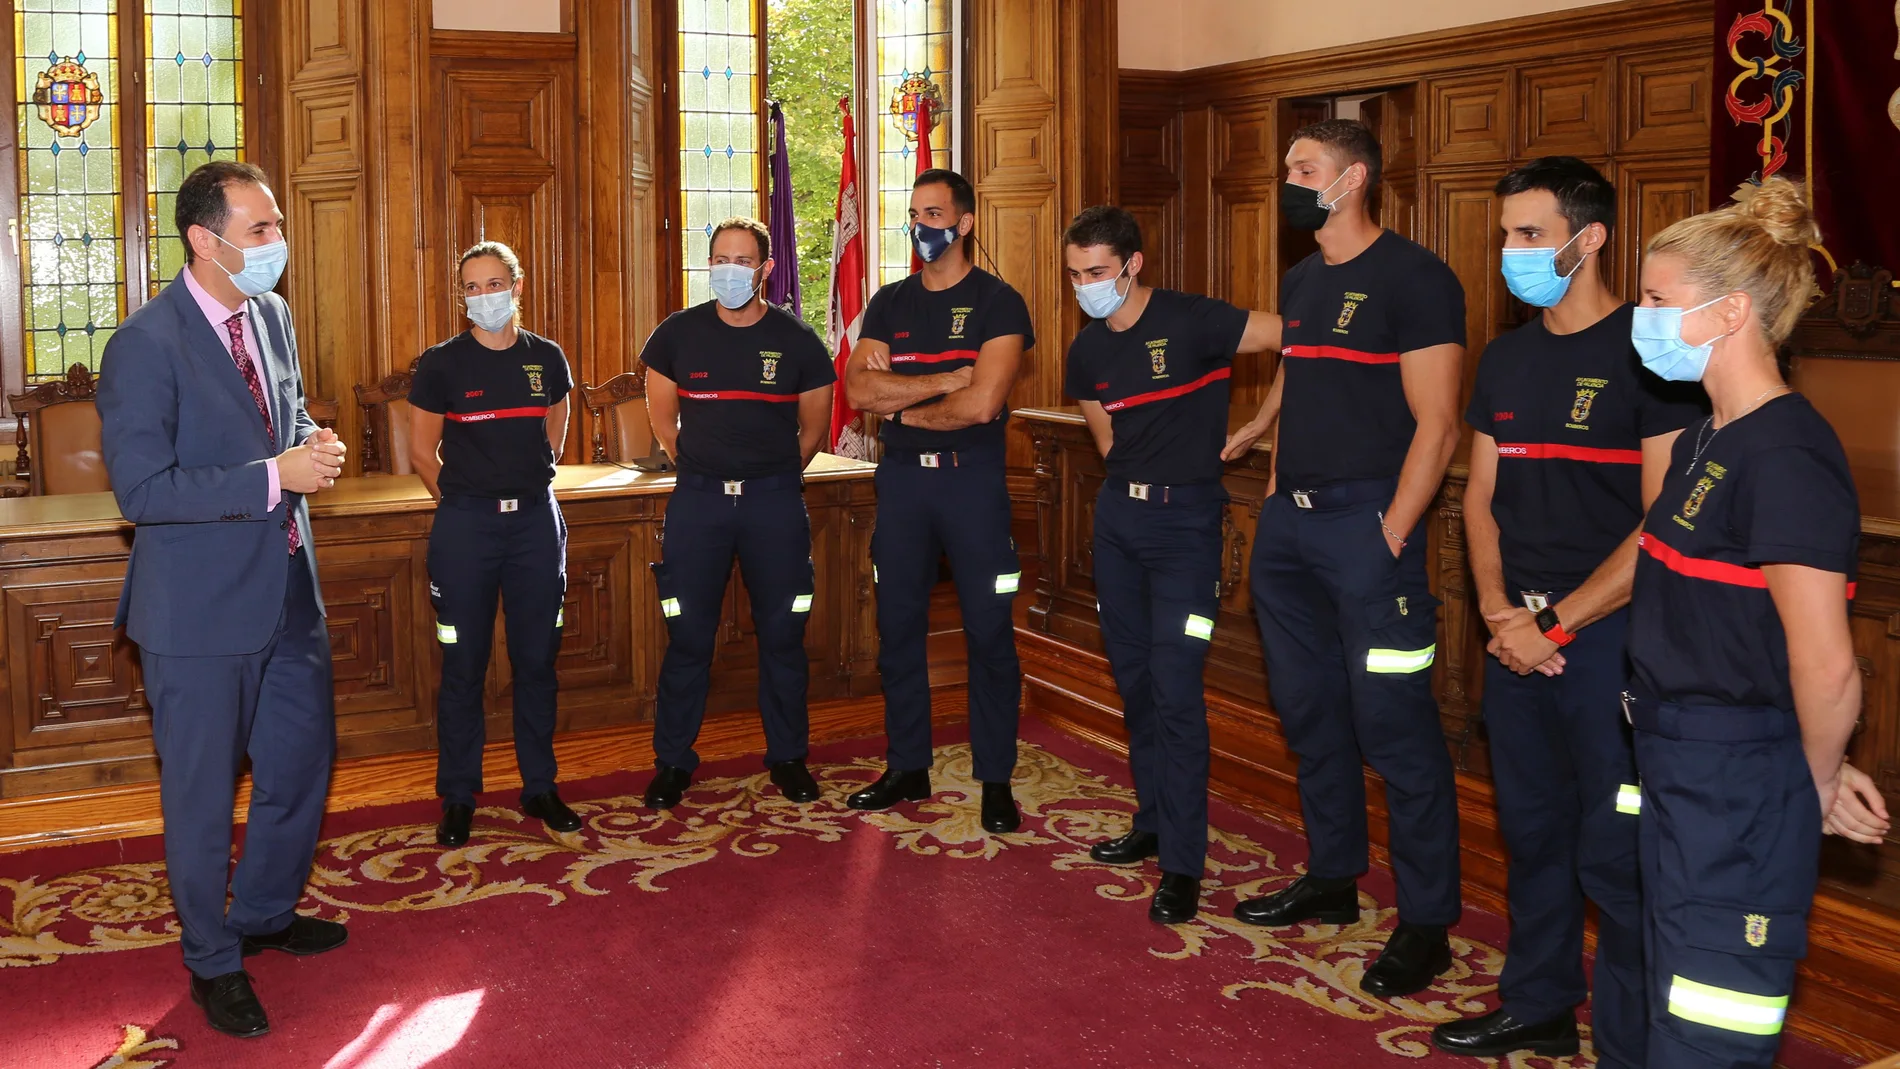 El Alcalde de Palencia, Mario Simón, asisten a la toma de posesión de los nuevo siete bomberos que se incorporan al Parque Municipal, entre las que se encuentran dos mujeres, que serán las primeras bomberas de Castilla y León